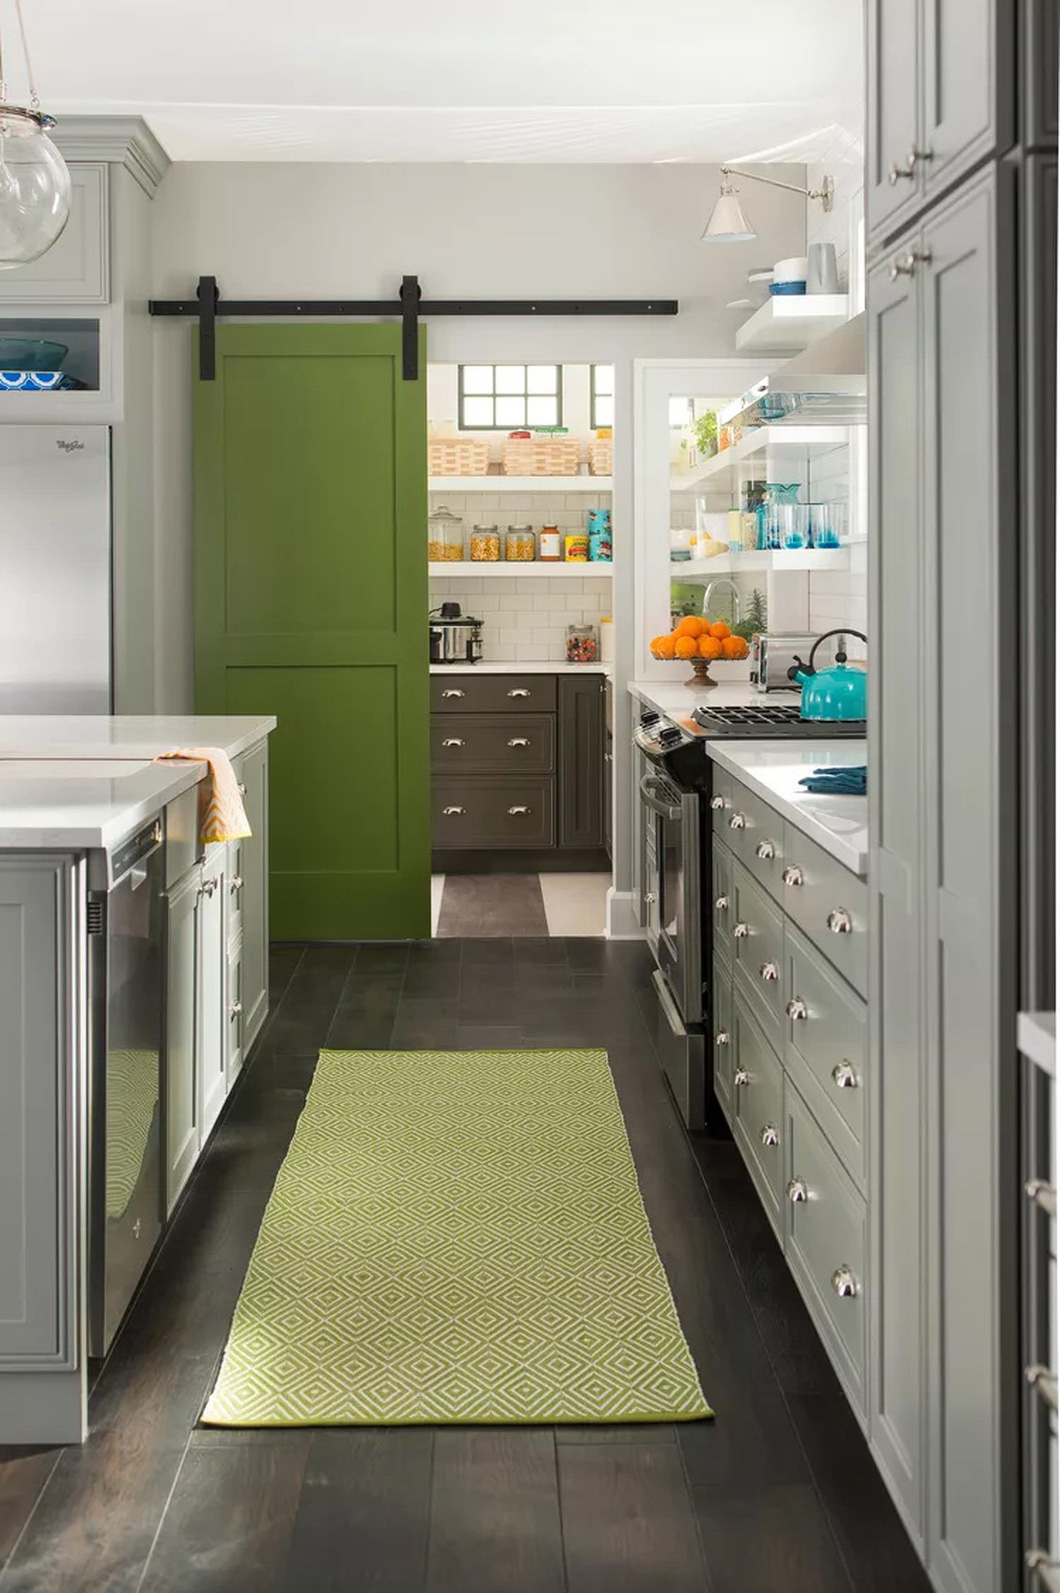 Cánh cửa màu xanh lá cây cung cấp thêm năng lượng tươi mới cho căn bếp màu xám trắng - Ảnh: BHG